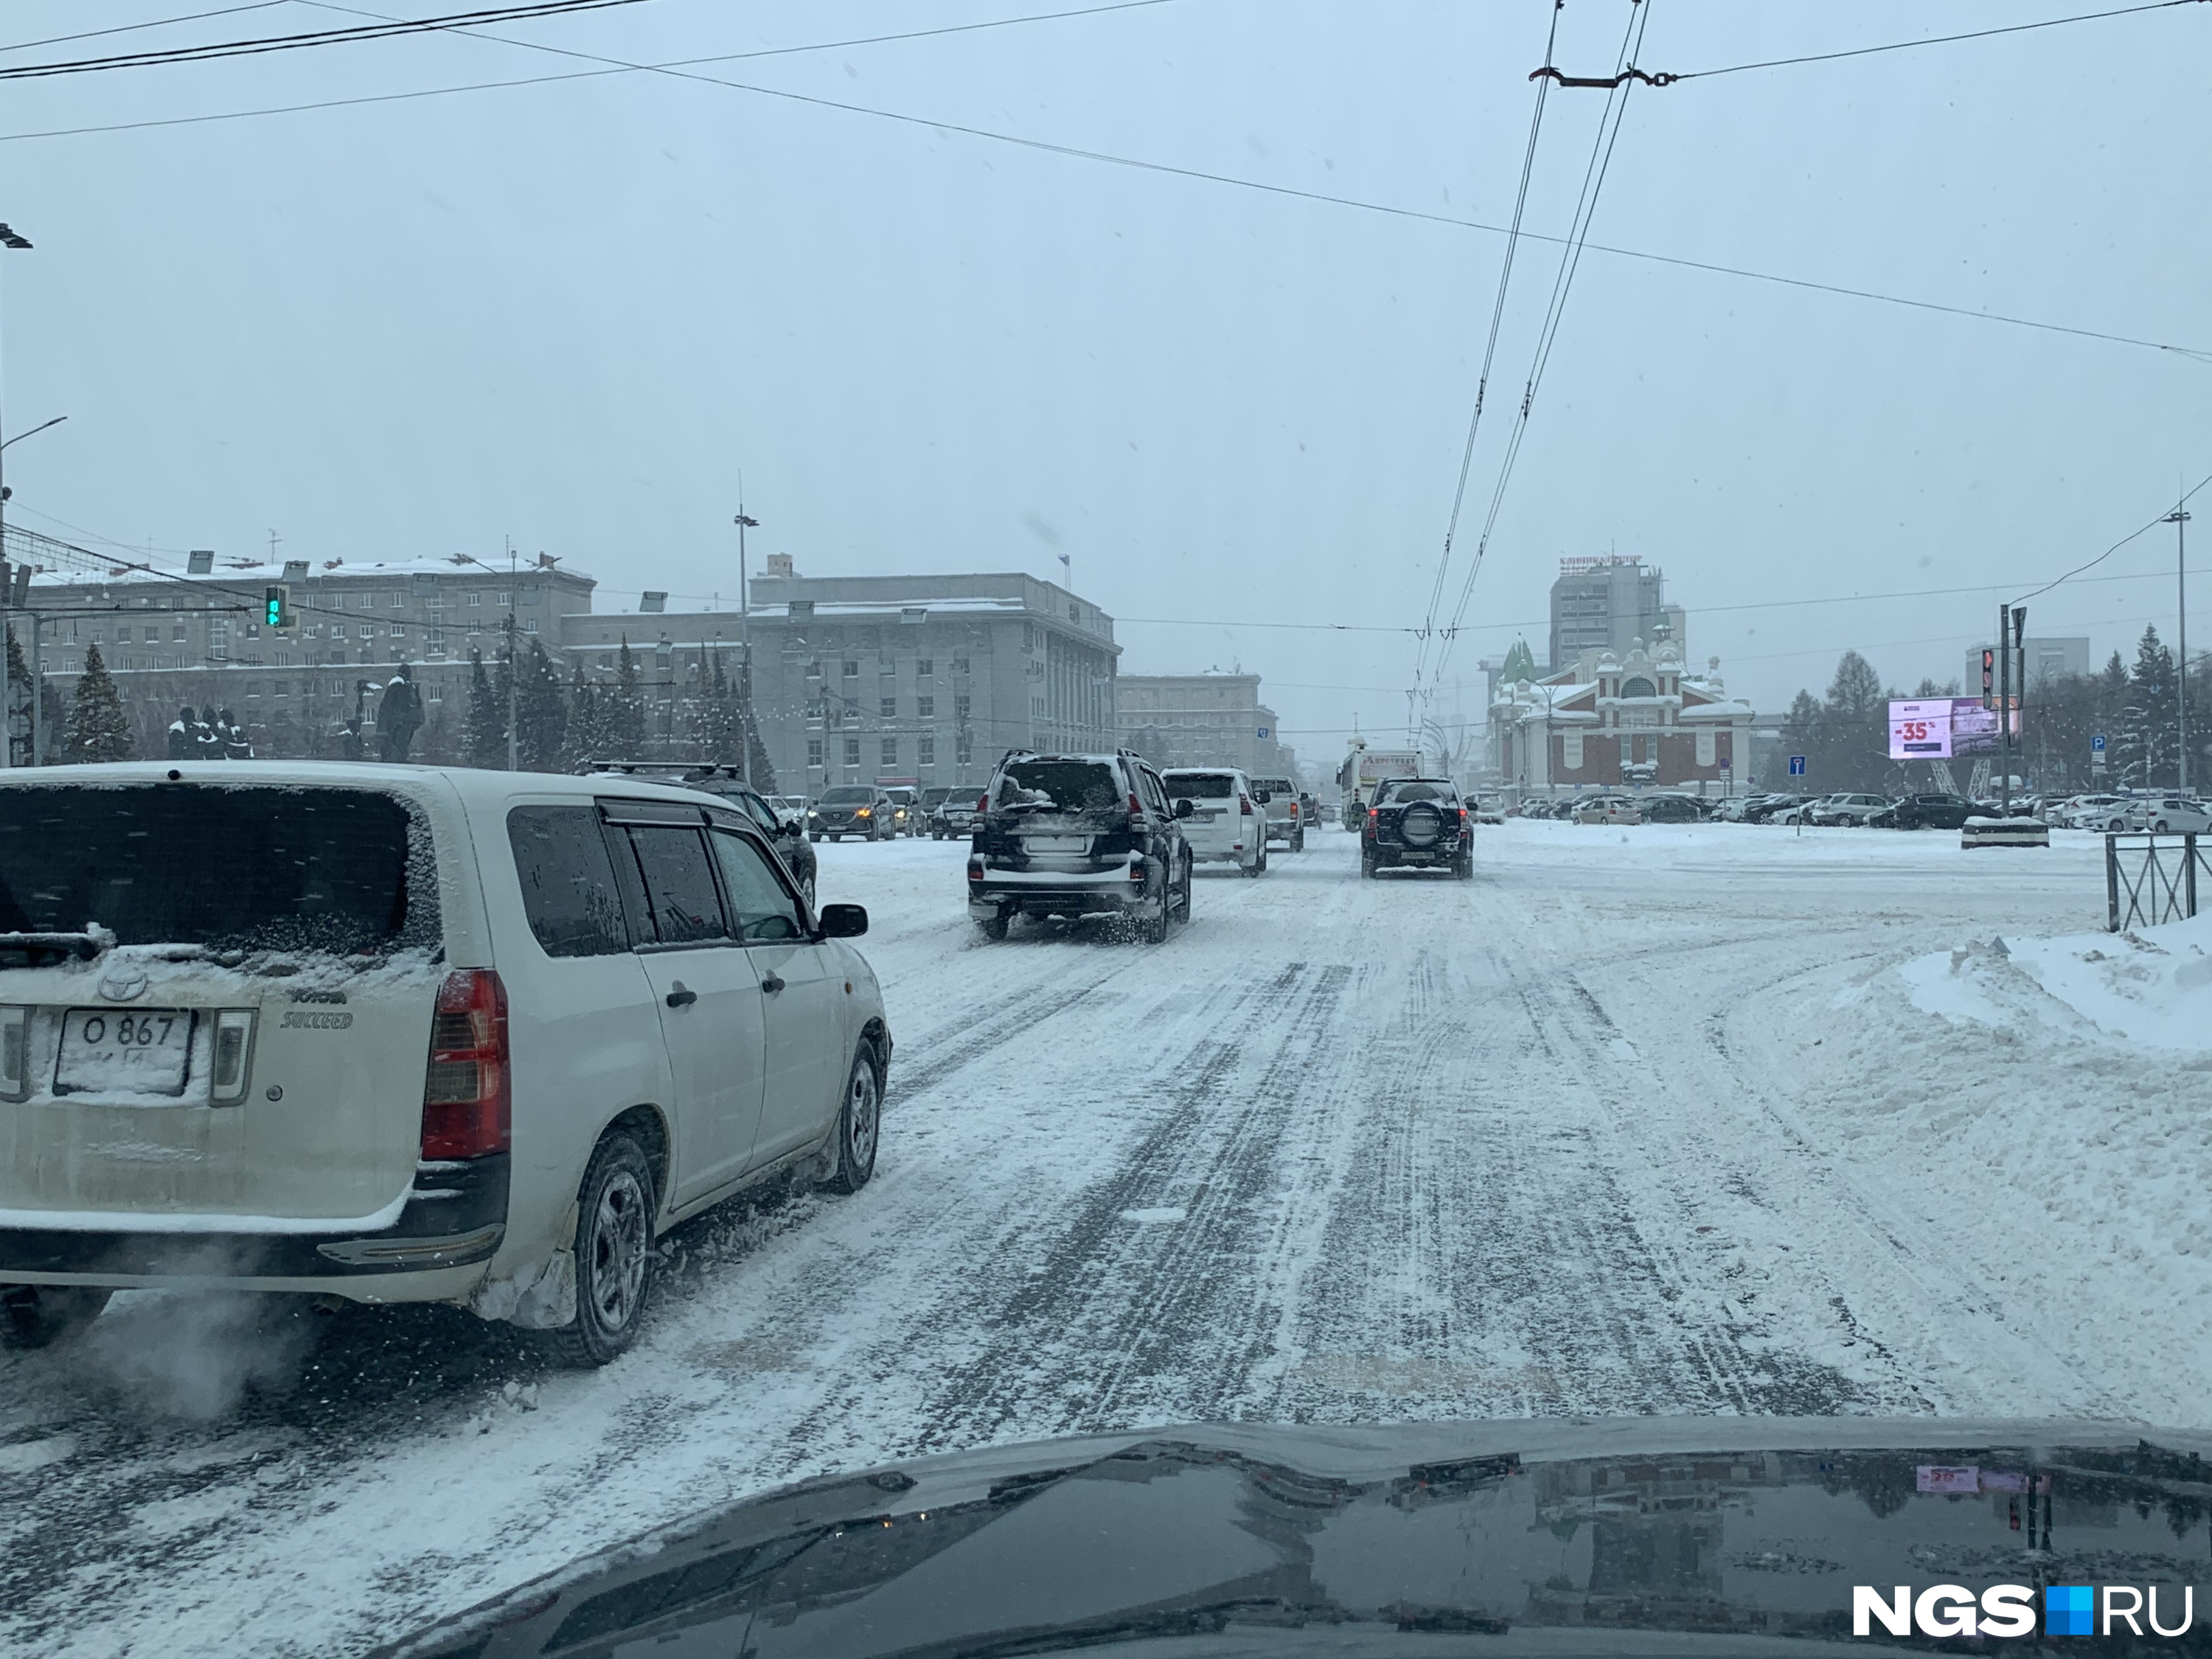 Пошла новосибирск. Снег в НСК. Авто из снега. Новосибирск под снегом. Снег в Новосибирске сегодня фото.